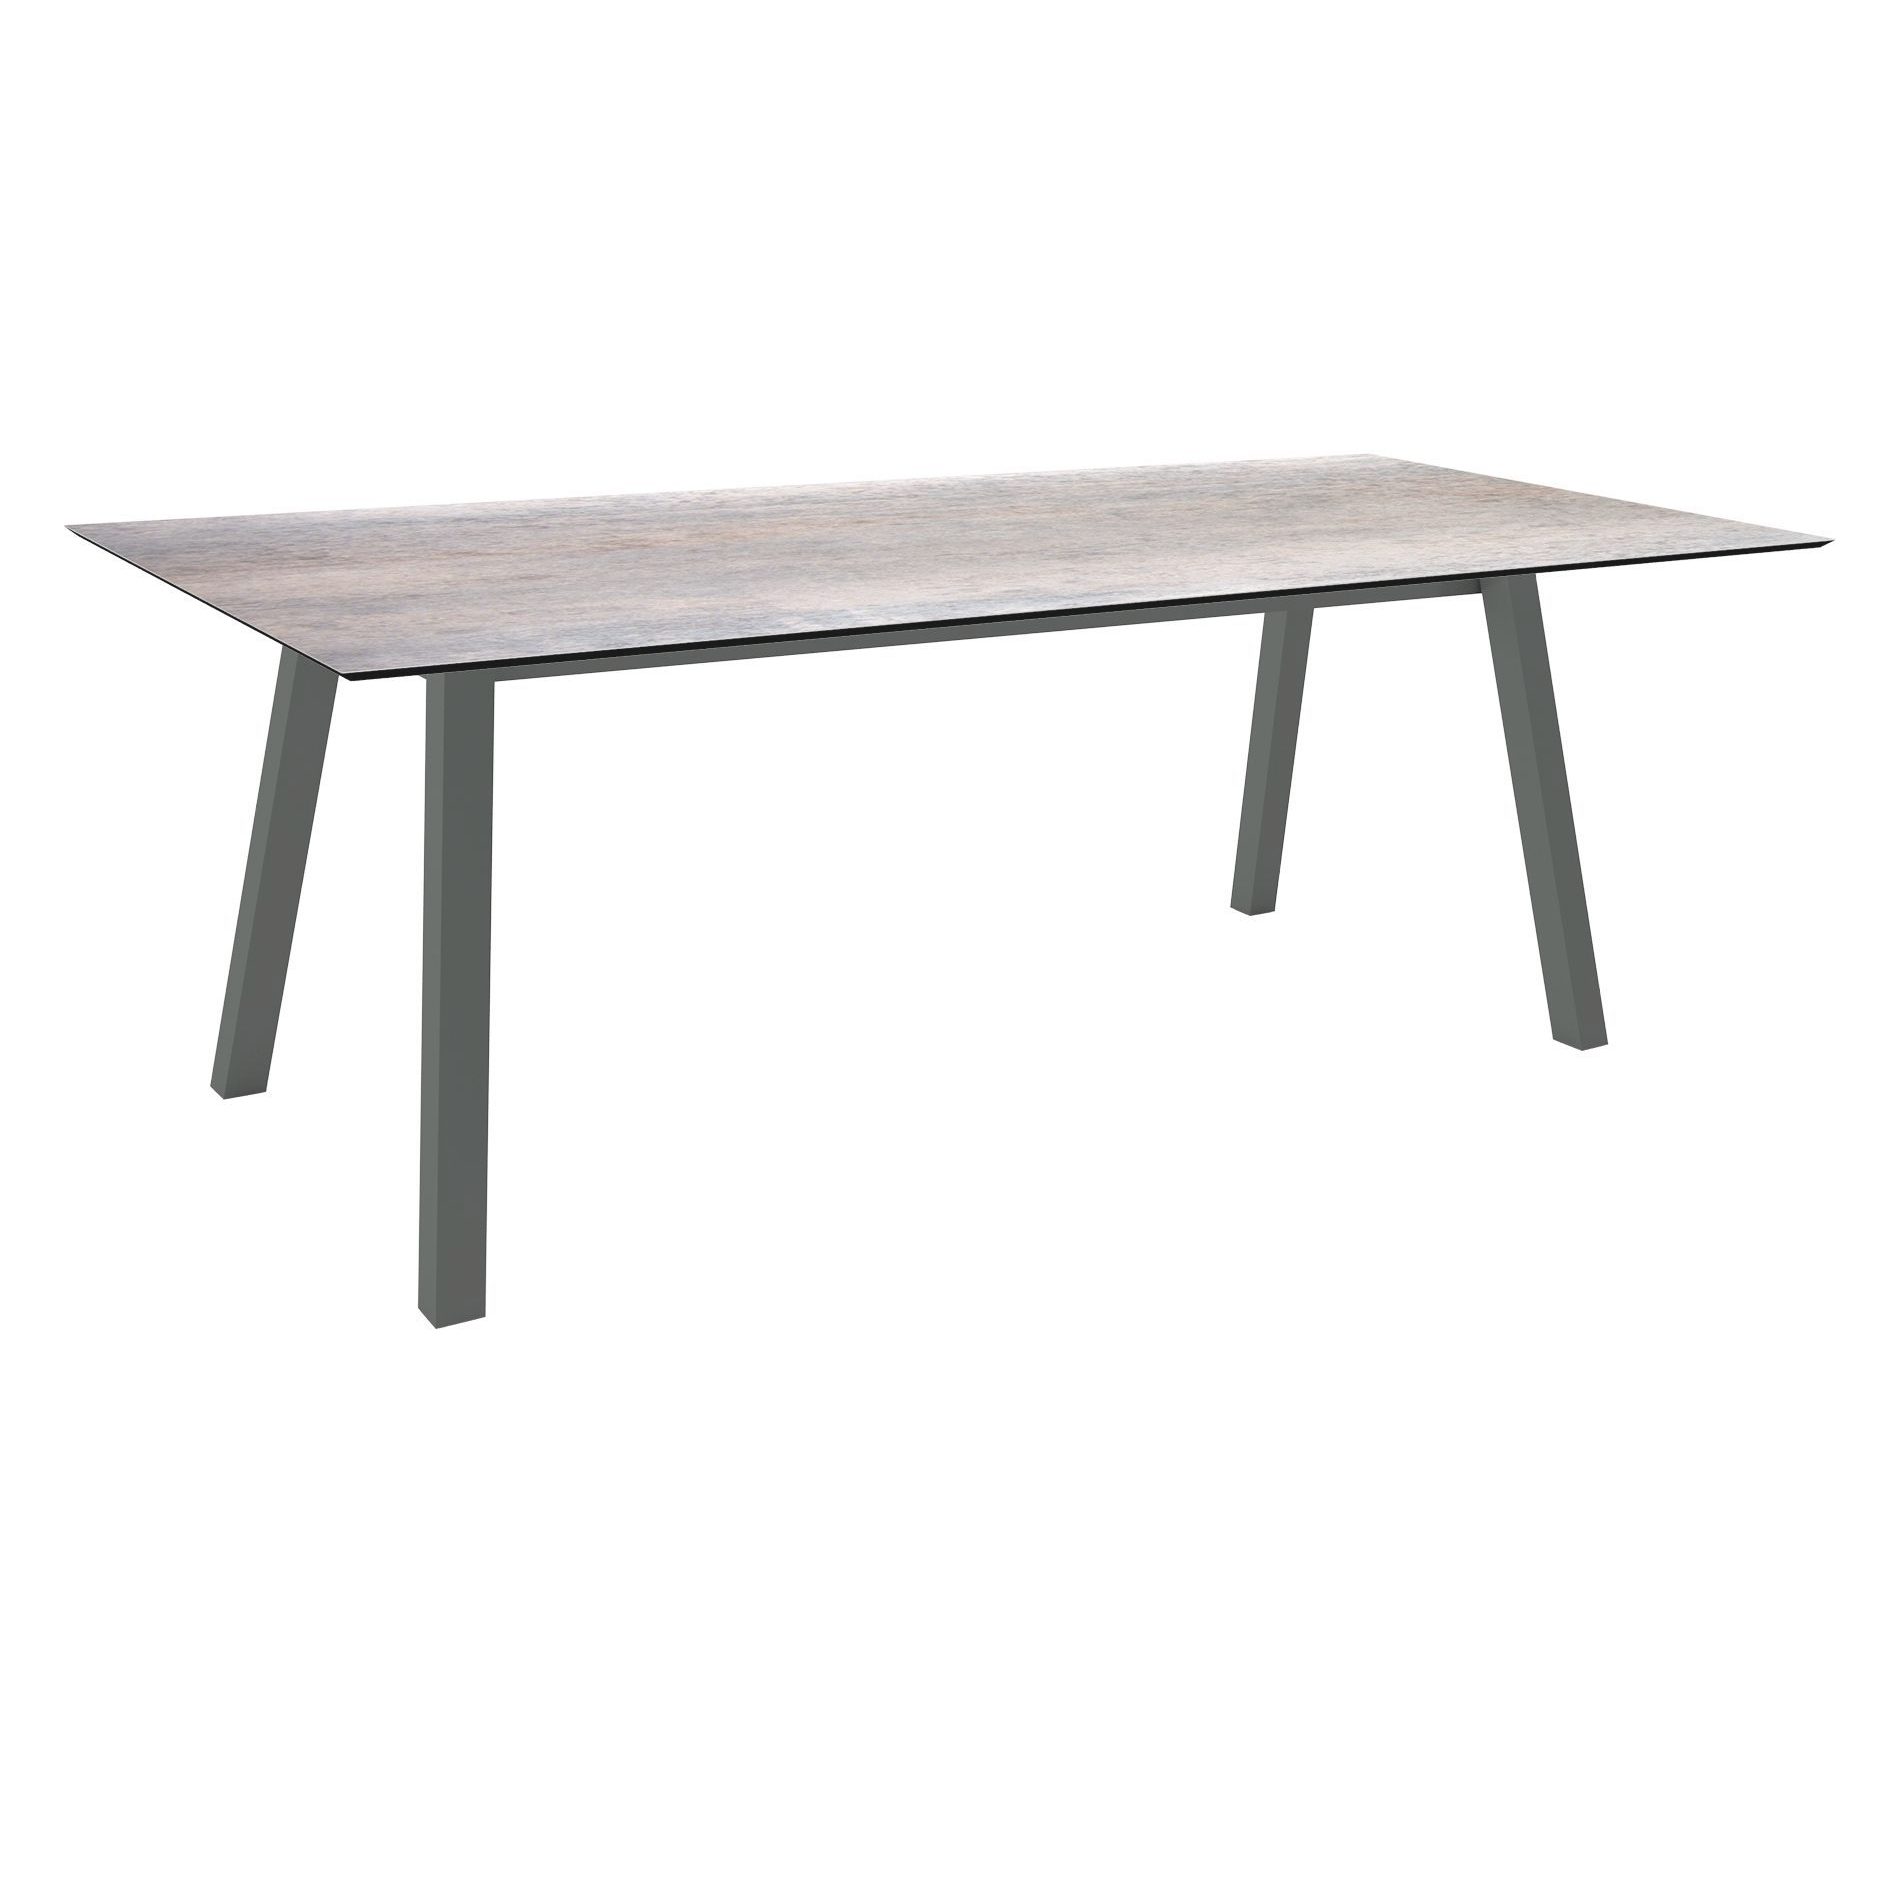 Stern Tisch "Interno", Größe 220x100cm, Alu anthrazit, Vierkantrohr, Tischplatte HPL Smoky